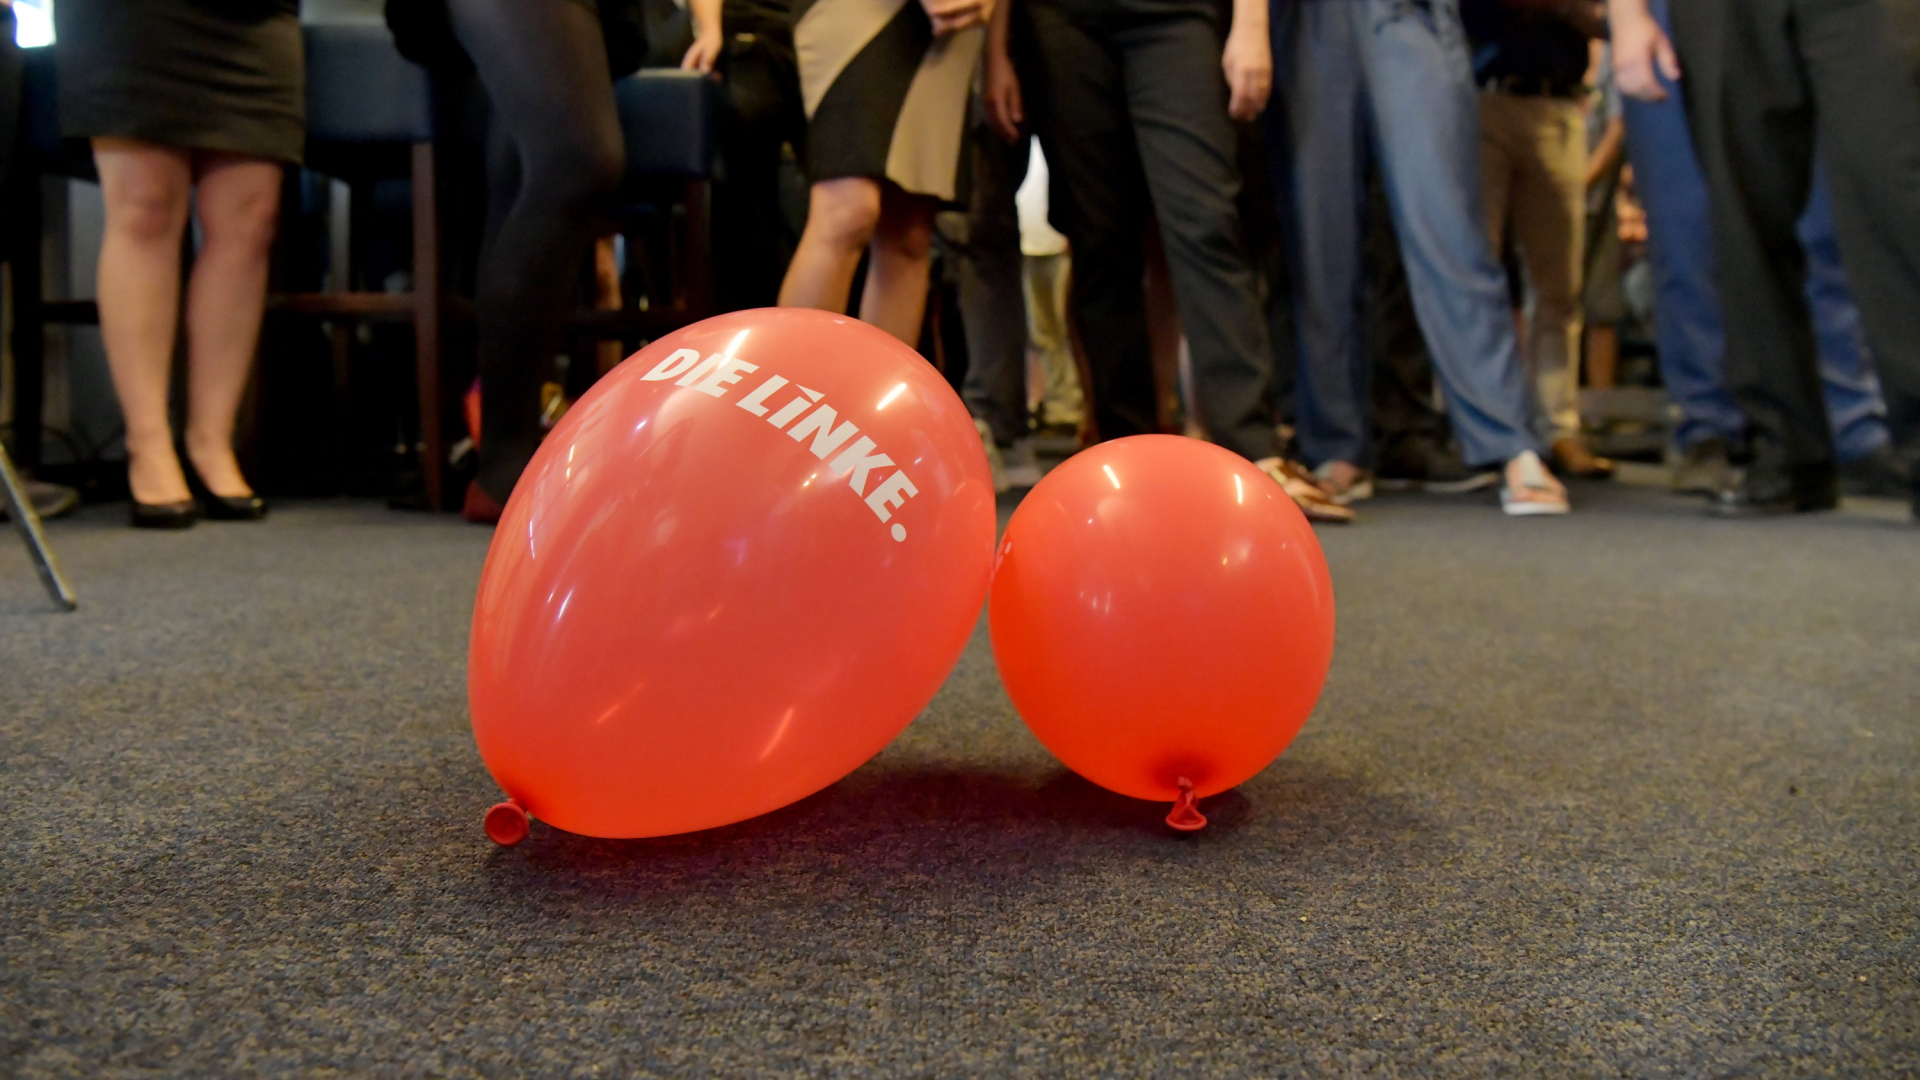 Zwei Luftballons mit dem Schriftzug "Die Linke" liegen auf einem grauen Teppichboden. | dpa